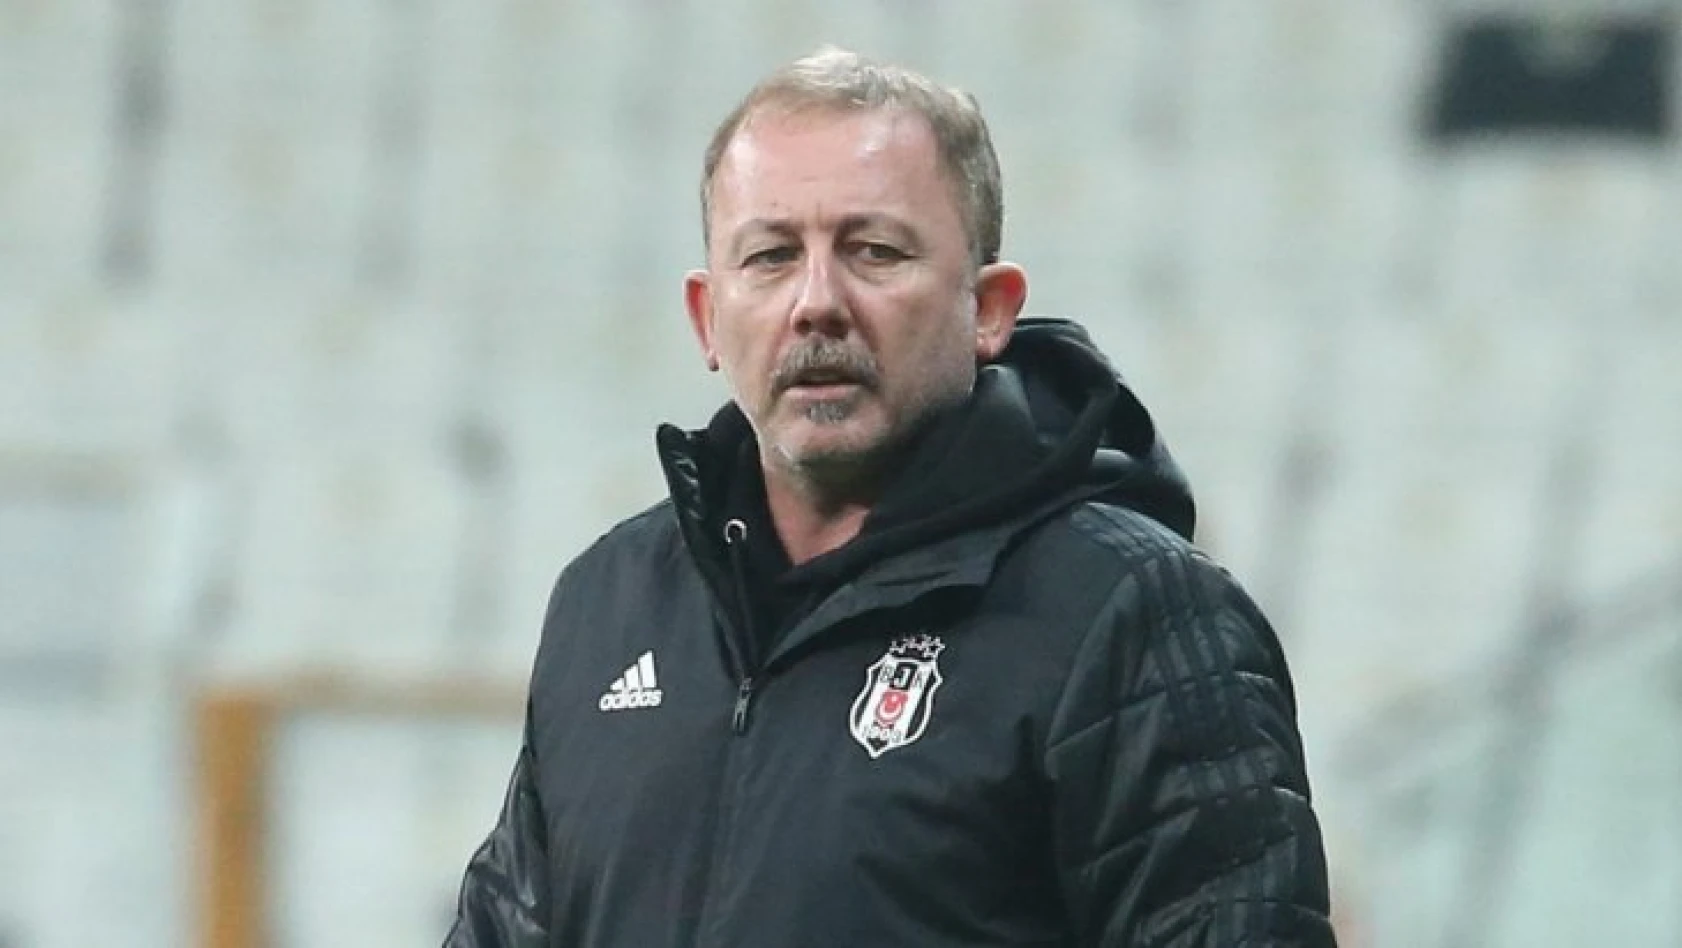 Beşiktaş Teknik Direktörü Sergen Yalçın istifa etti